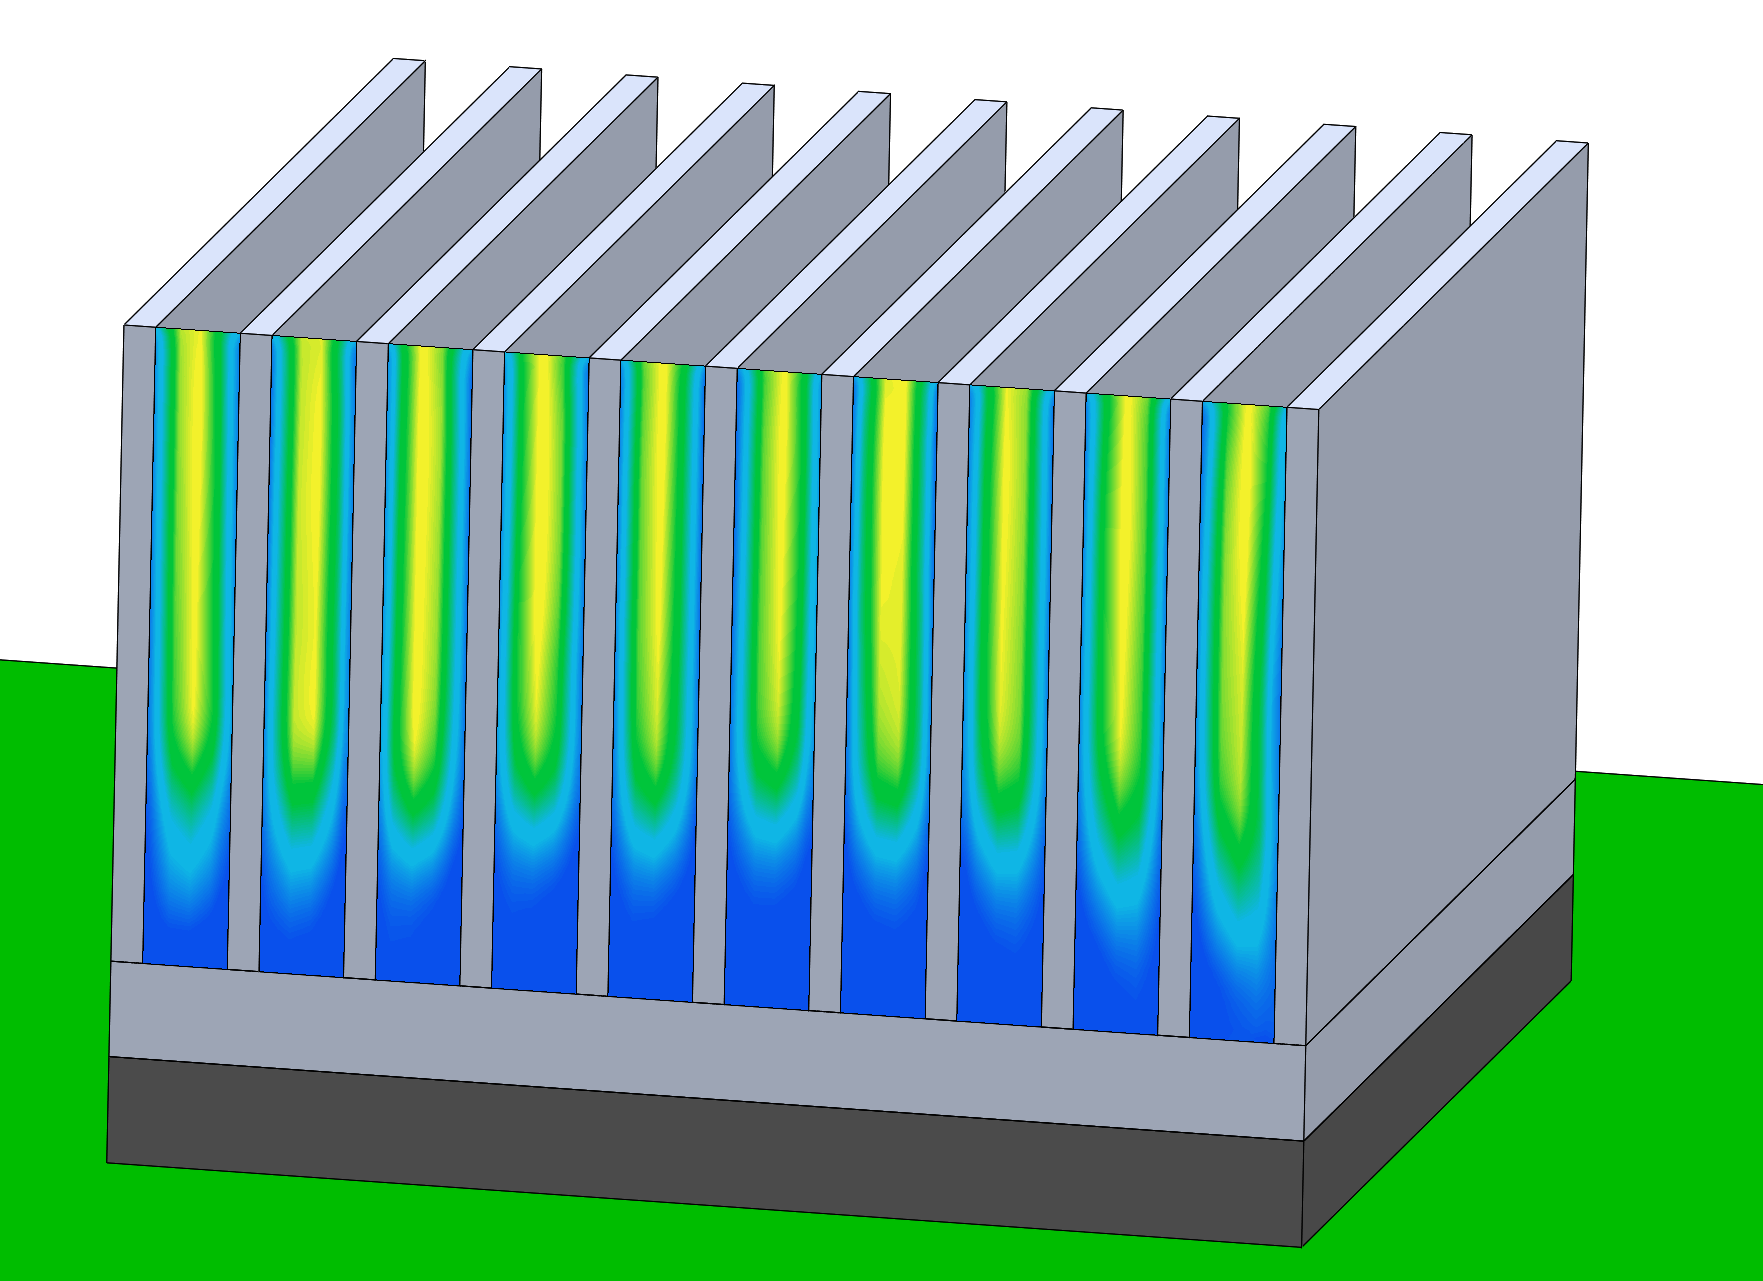 Surface plot of air speed between heat sink fins in Simcenter Flotherm XT